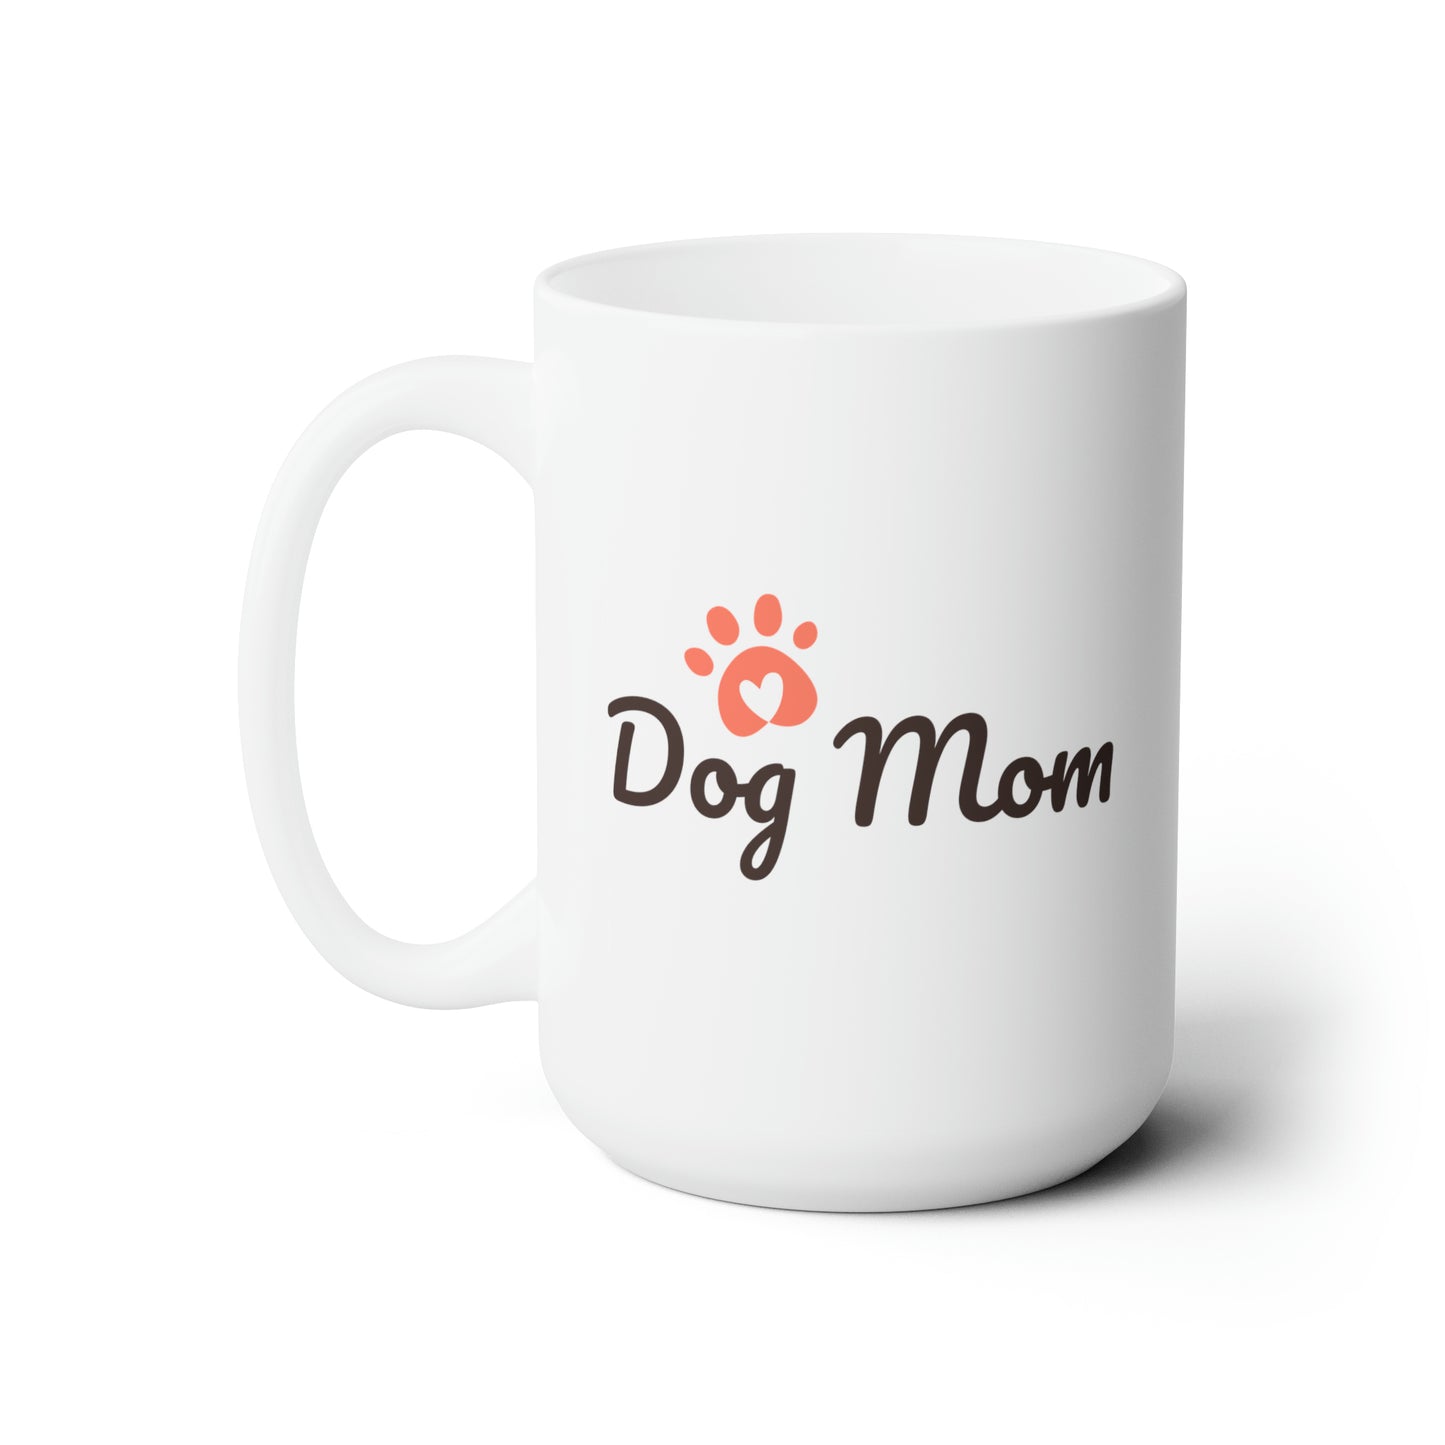 "Dog Mom" Graphic Design Ceramic Mug 15oz